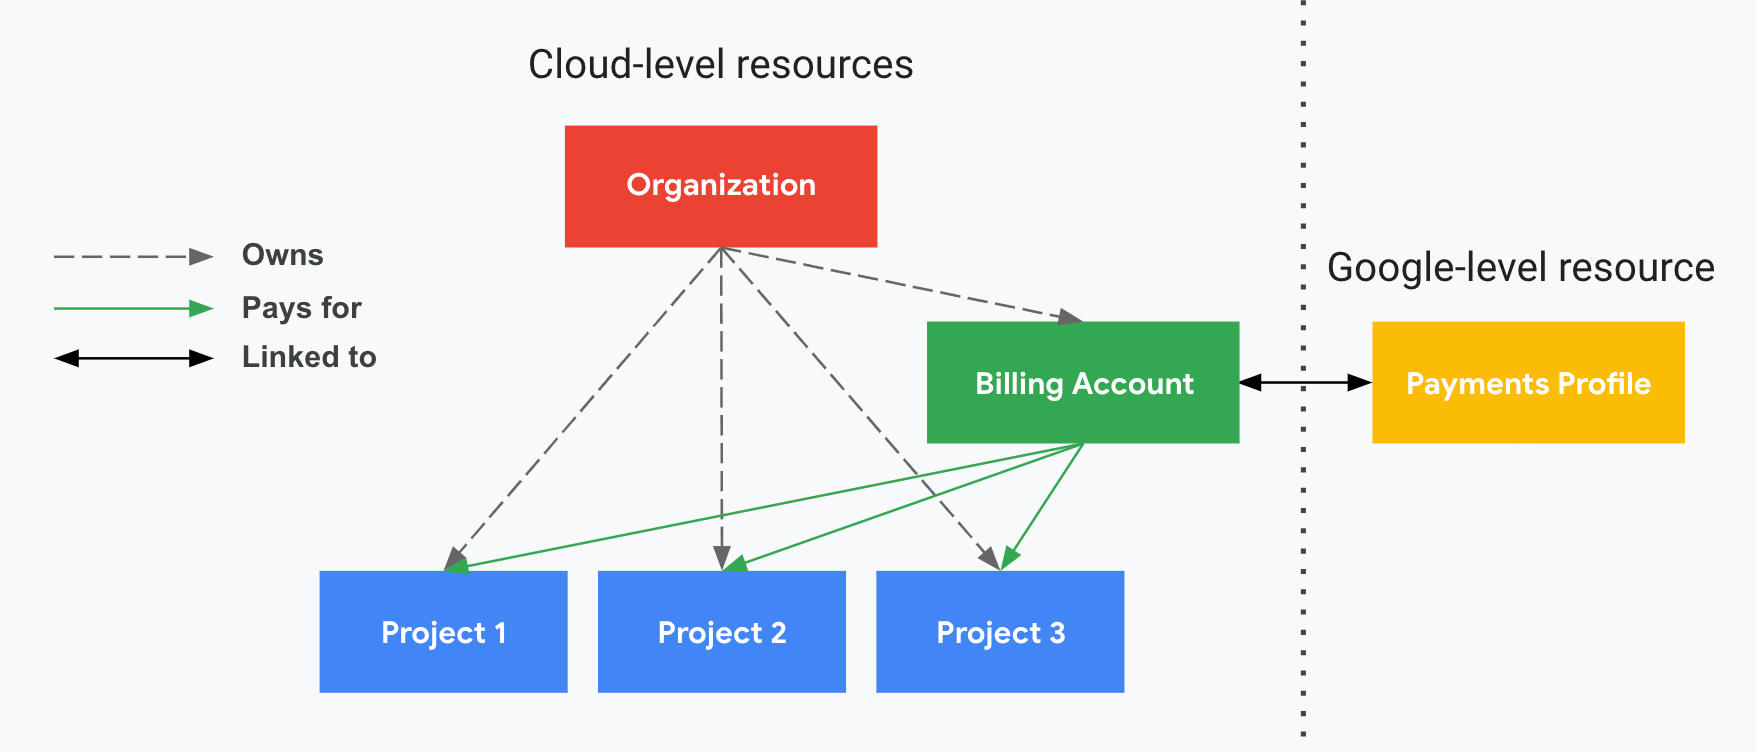 Beschreibt, wie sich Projekte auf Ihr Cloud-Rechnungskonto, die Organisation und Ihr Google-Zahlungsprofil beziehen. Auf der einen Seite werden Ihre Ressourcen auf Google Cloud-Ebene angezeigt (Organisation, Cloud-Rechnungskonto und zugehörige Projekte) und auf der anderen Seite, getrennt durch eine gepunktete vertikale Linie, Ihre Ressource auf Google-Ebene (ein Google-Zahlungsprofil). Ihre Projekte werden über das Cloud-Rechnungskonto bezahlt, das mit einem Google-Zahlungsprofil verknüpft ist. Die Organisation steuert die Inhaberschaft des Cloud-Rechnungskontos mithilfe von IAM.